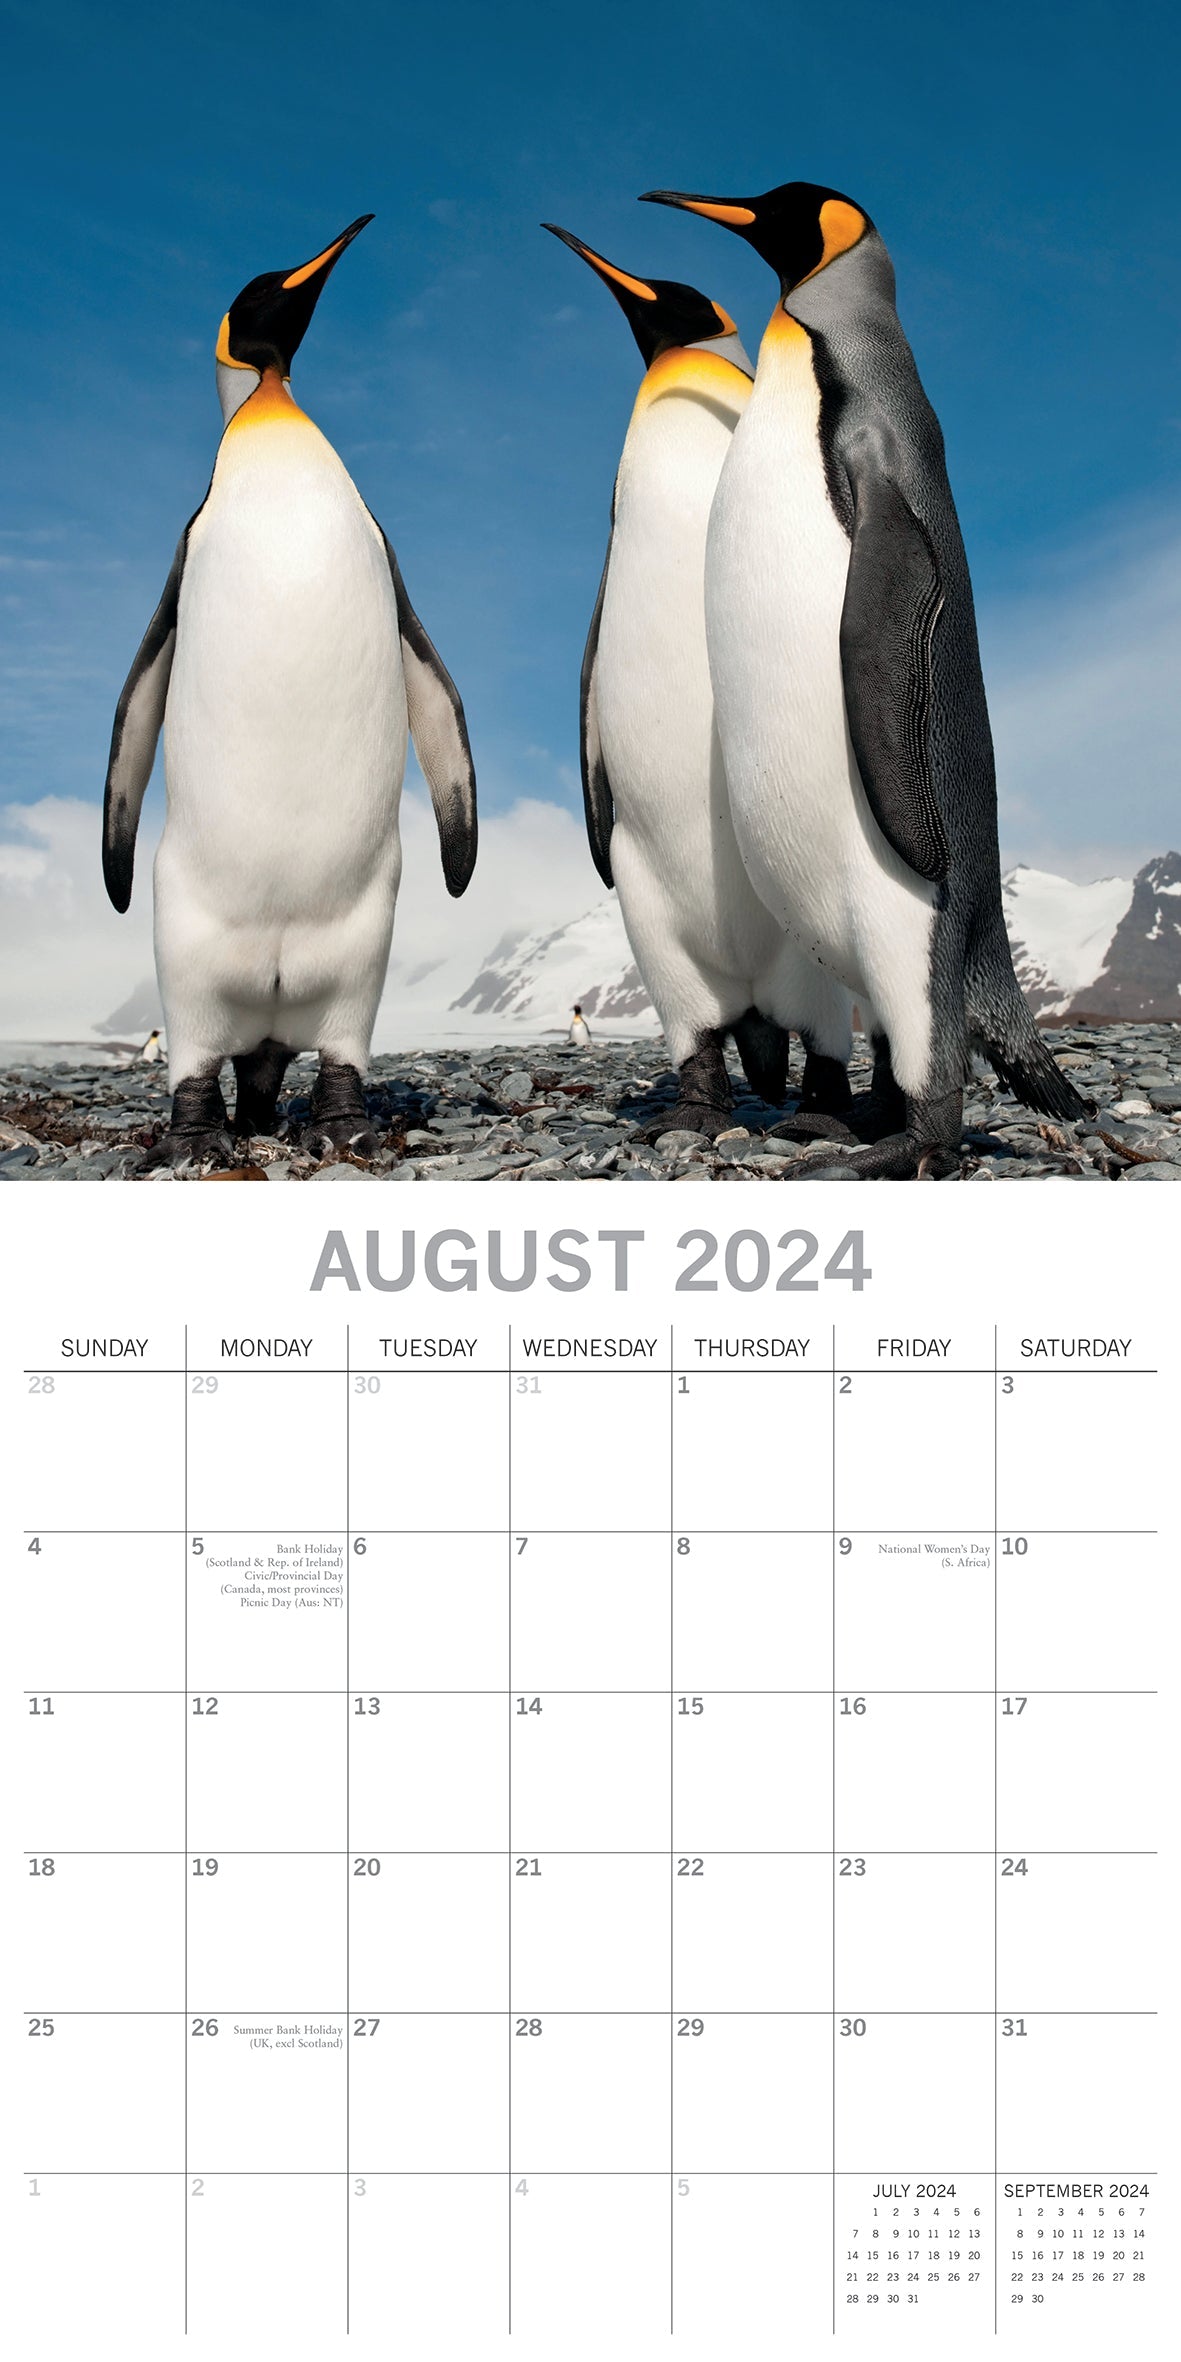 Penguin Calendar 